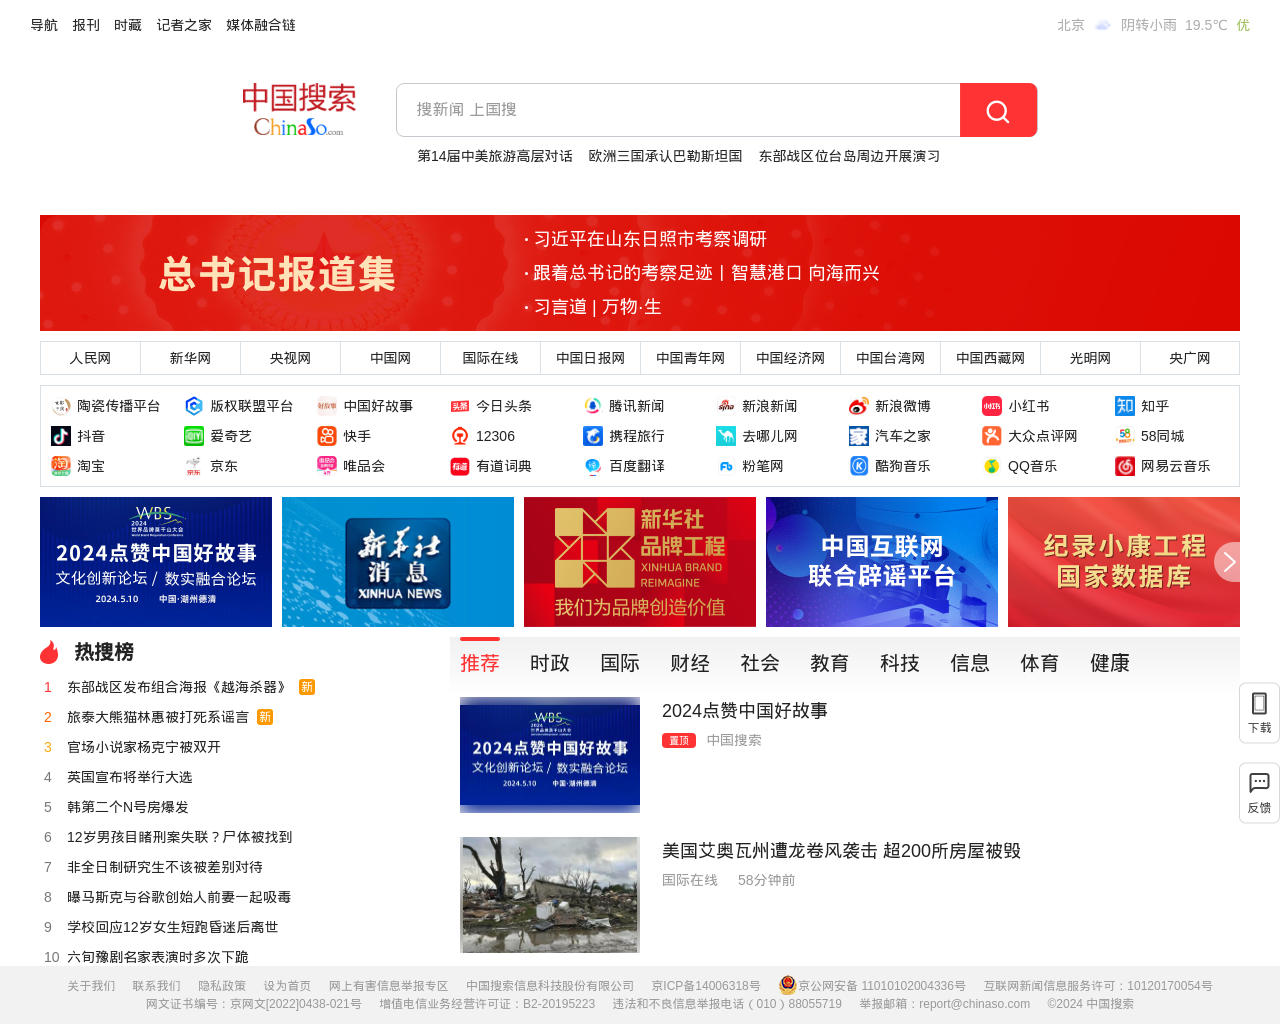 news.chinaso.com